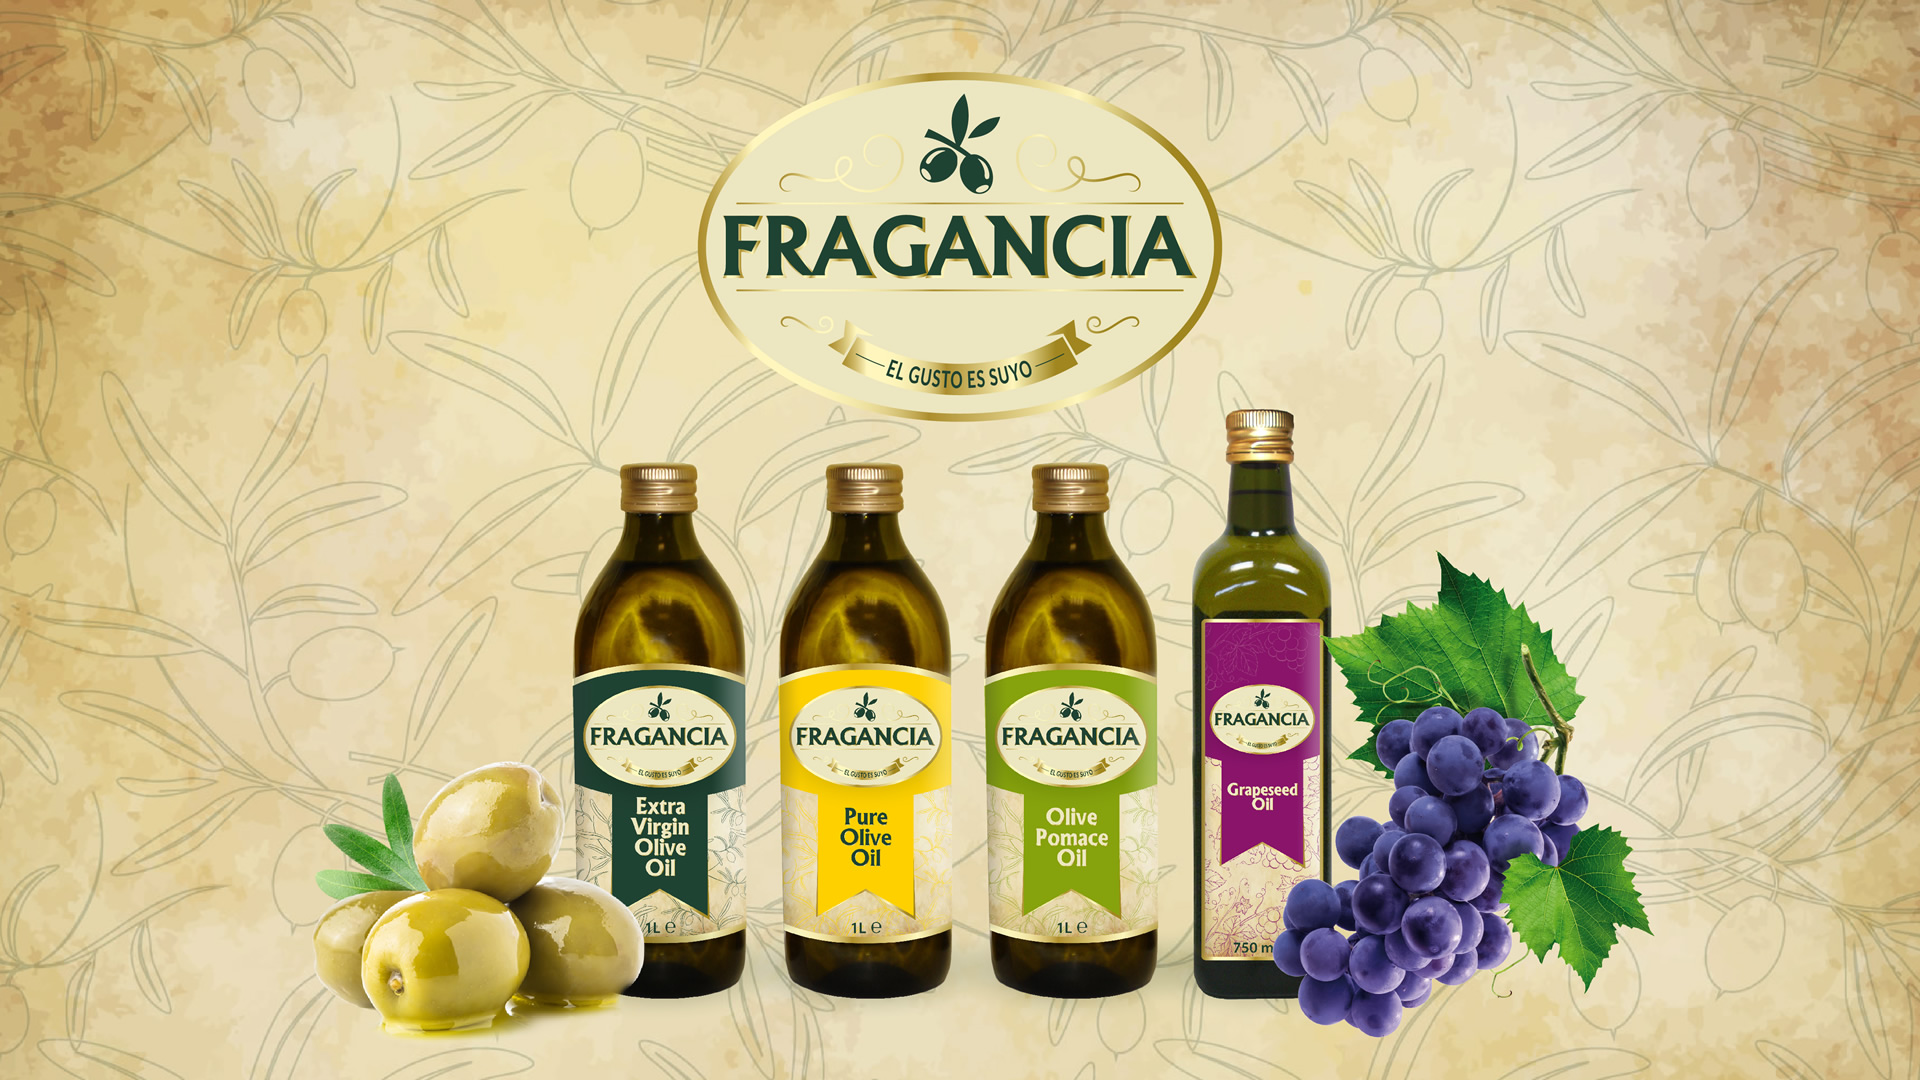 Fragancia Olive Oil Logo - Grafica etichette Olio - realizzazione Sito Web - Patrizio Rossi - Portfolio Web Graphic Designer